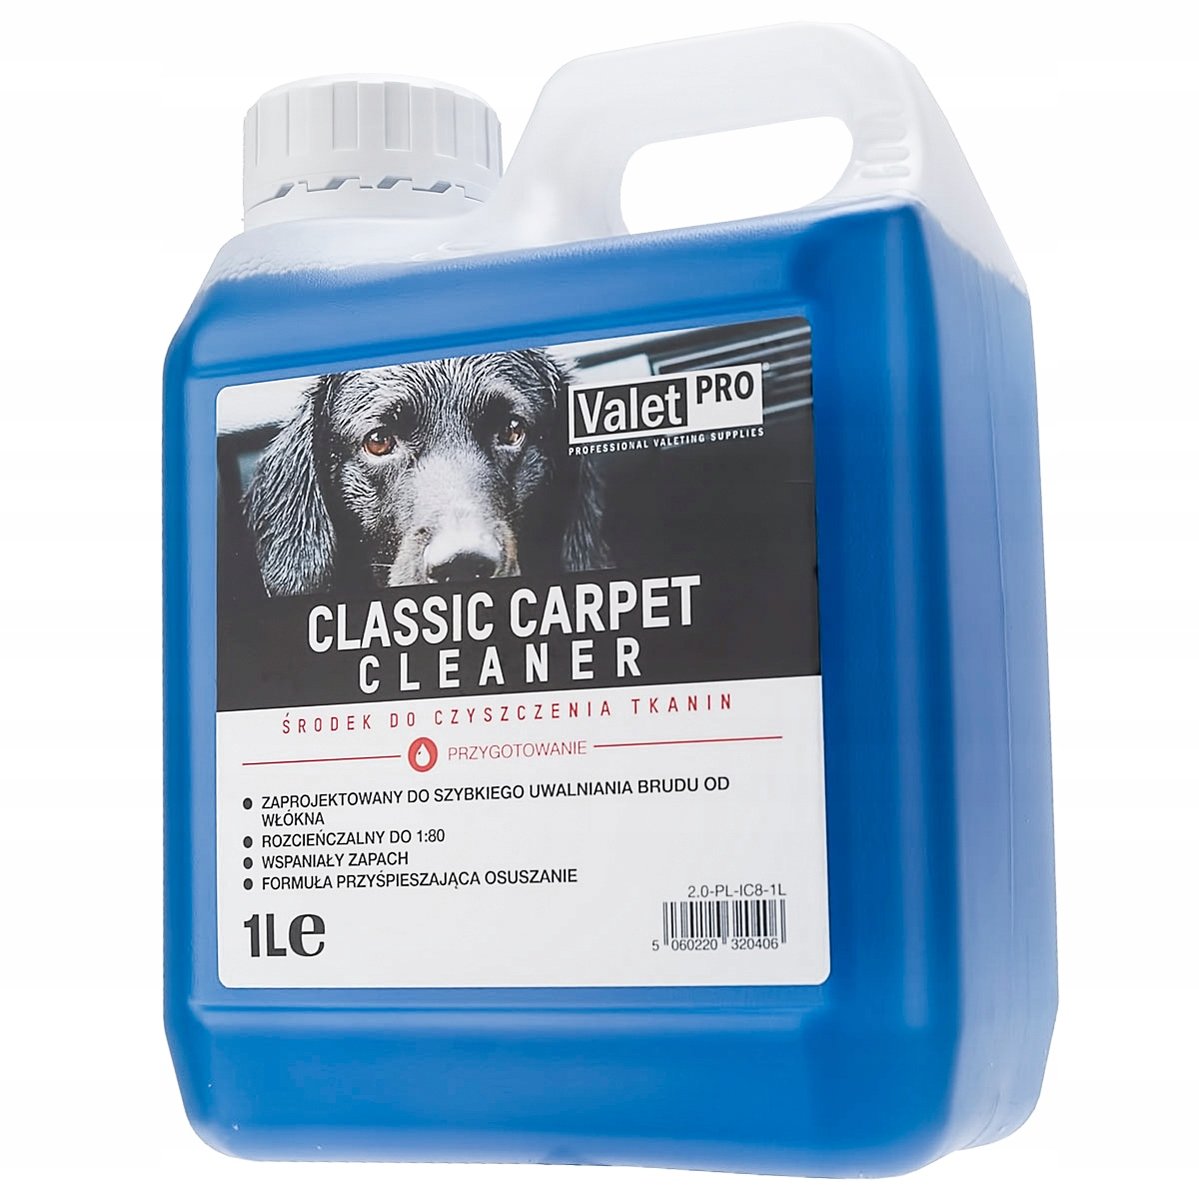 ValetPRO Classic Carpet Cleaner środek do czyszczenia dywanów i tapicerki 1liter IC8-1L